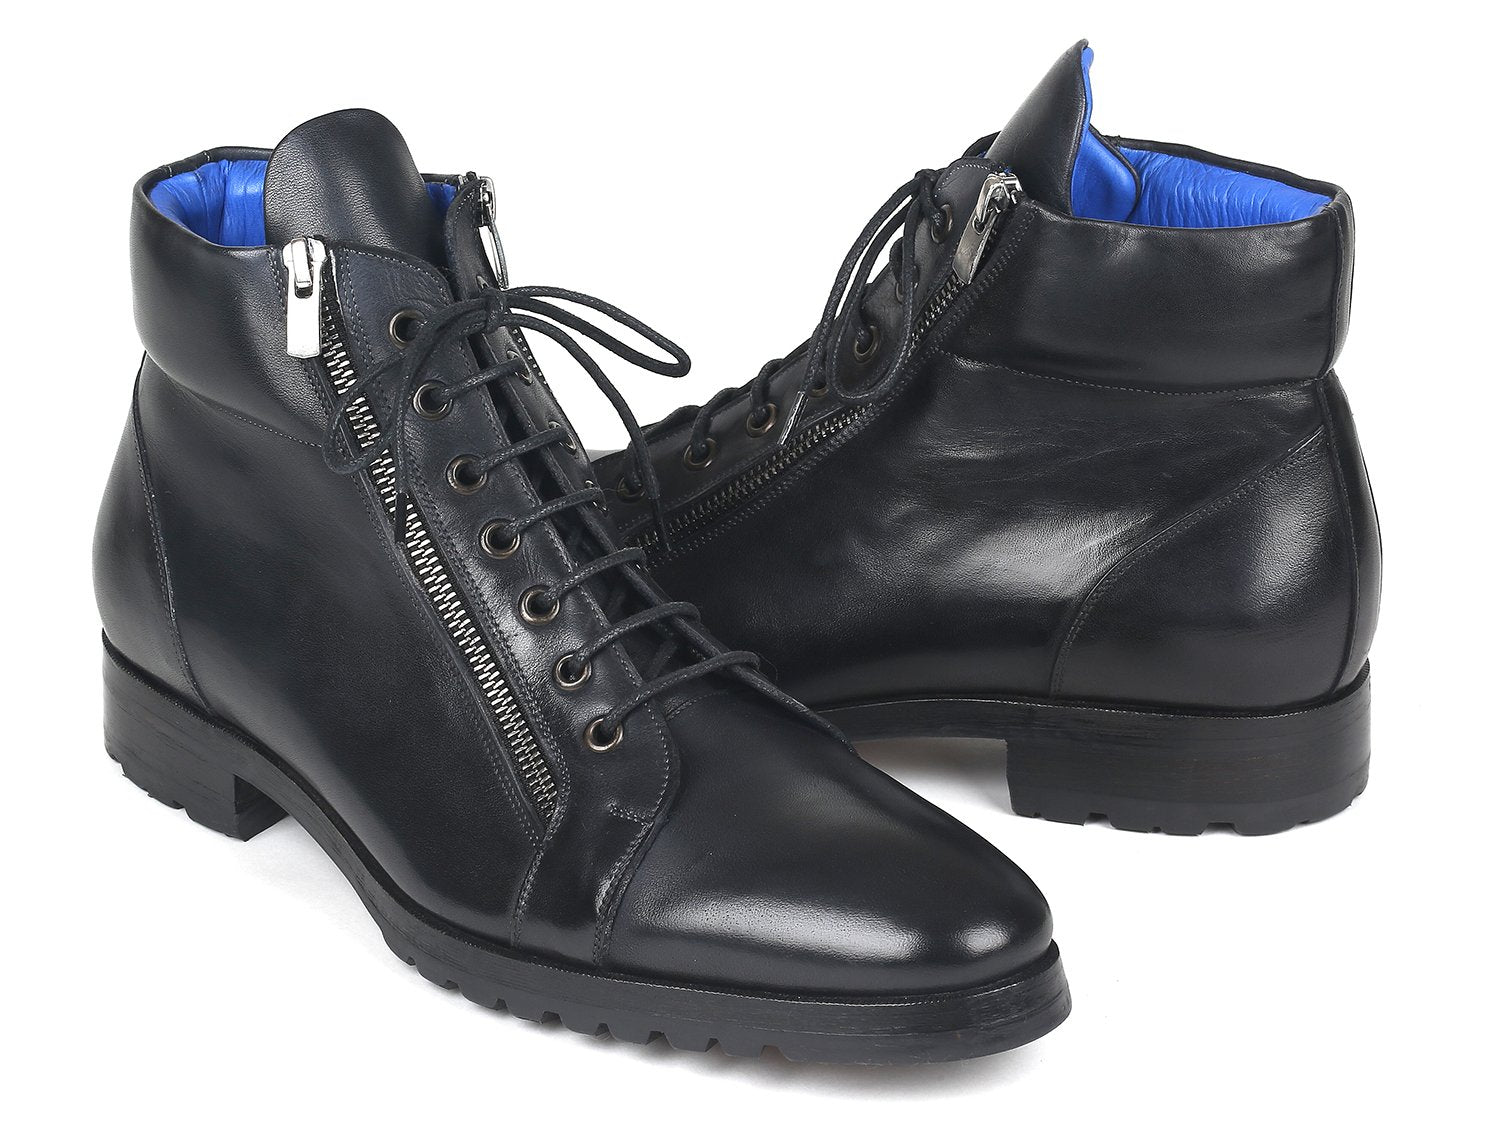 Paul Parkman Side Zipper Leather Boots Black - 12455-BLK